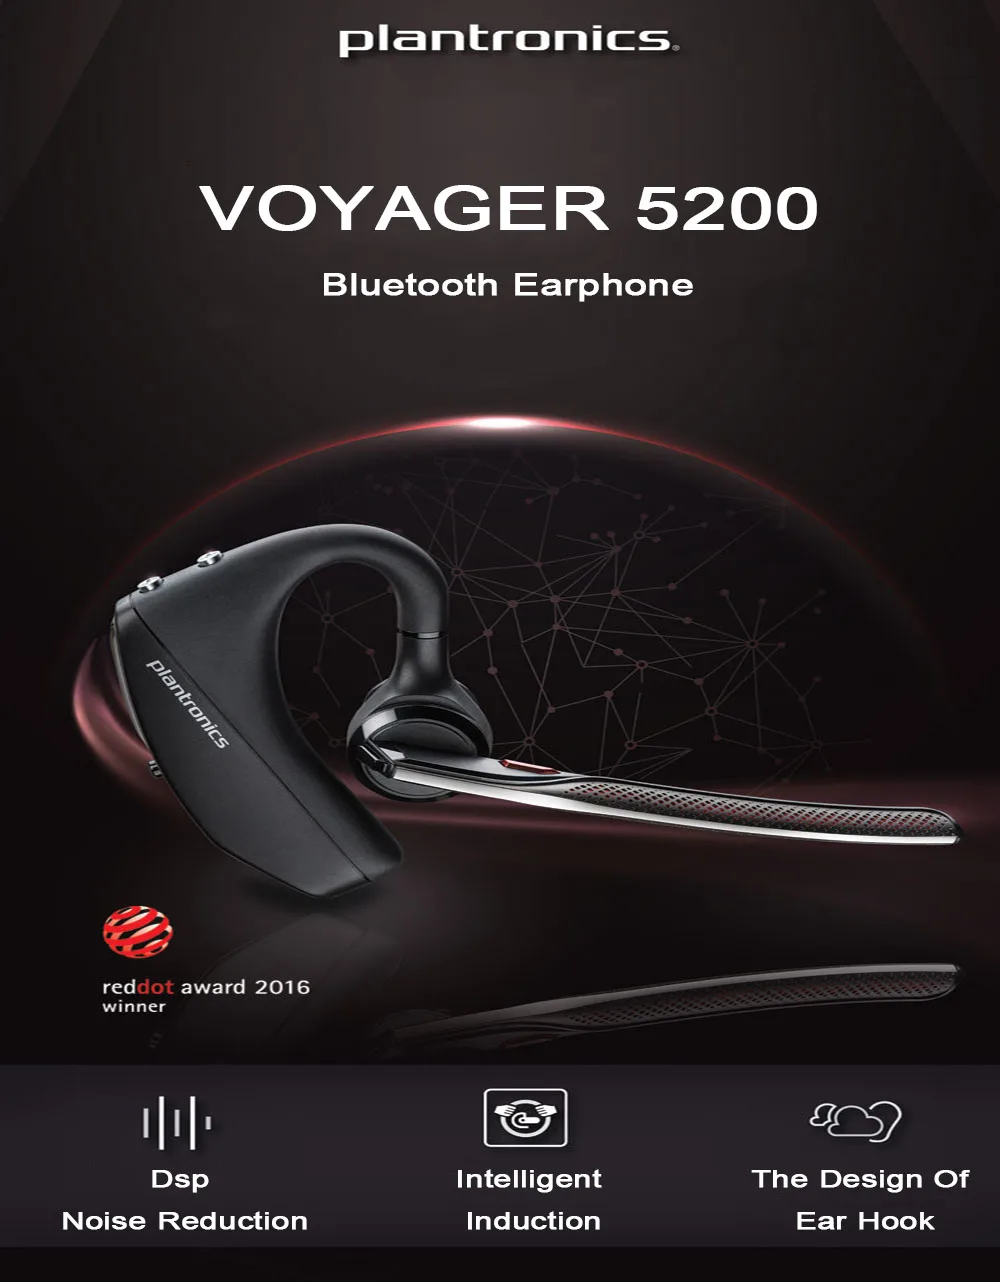 Plantronics Auriculares mono manos libres Bluetooth inalámbricos Voyager  Legend - BTVLEGEND